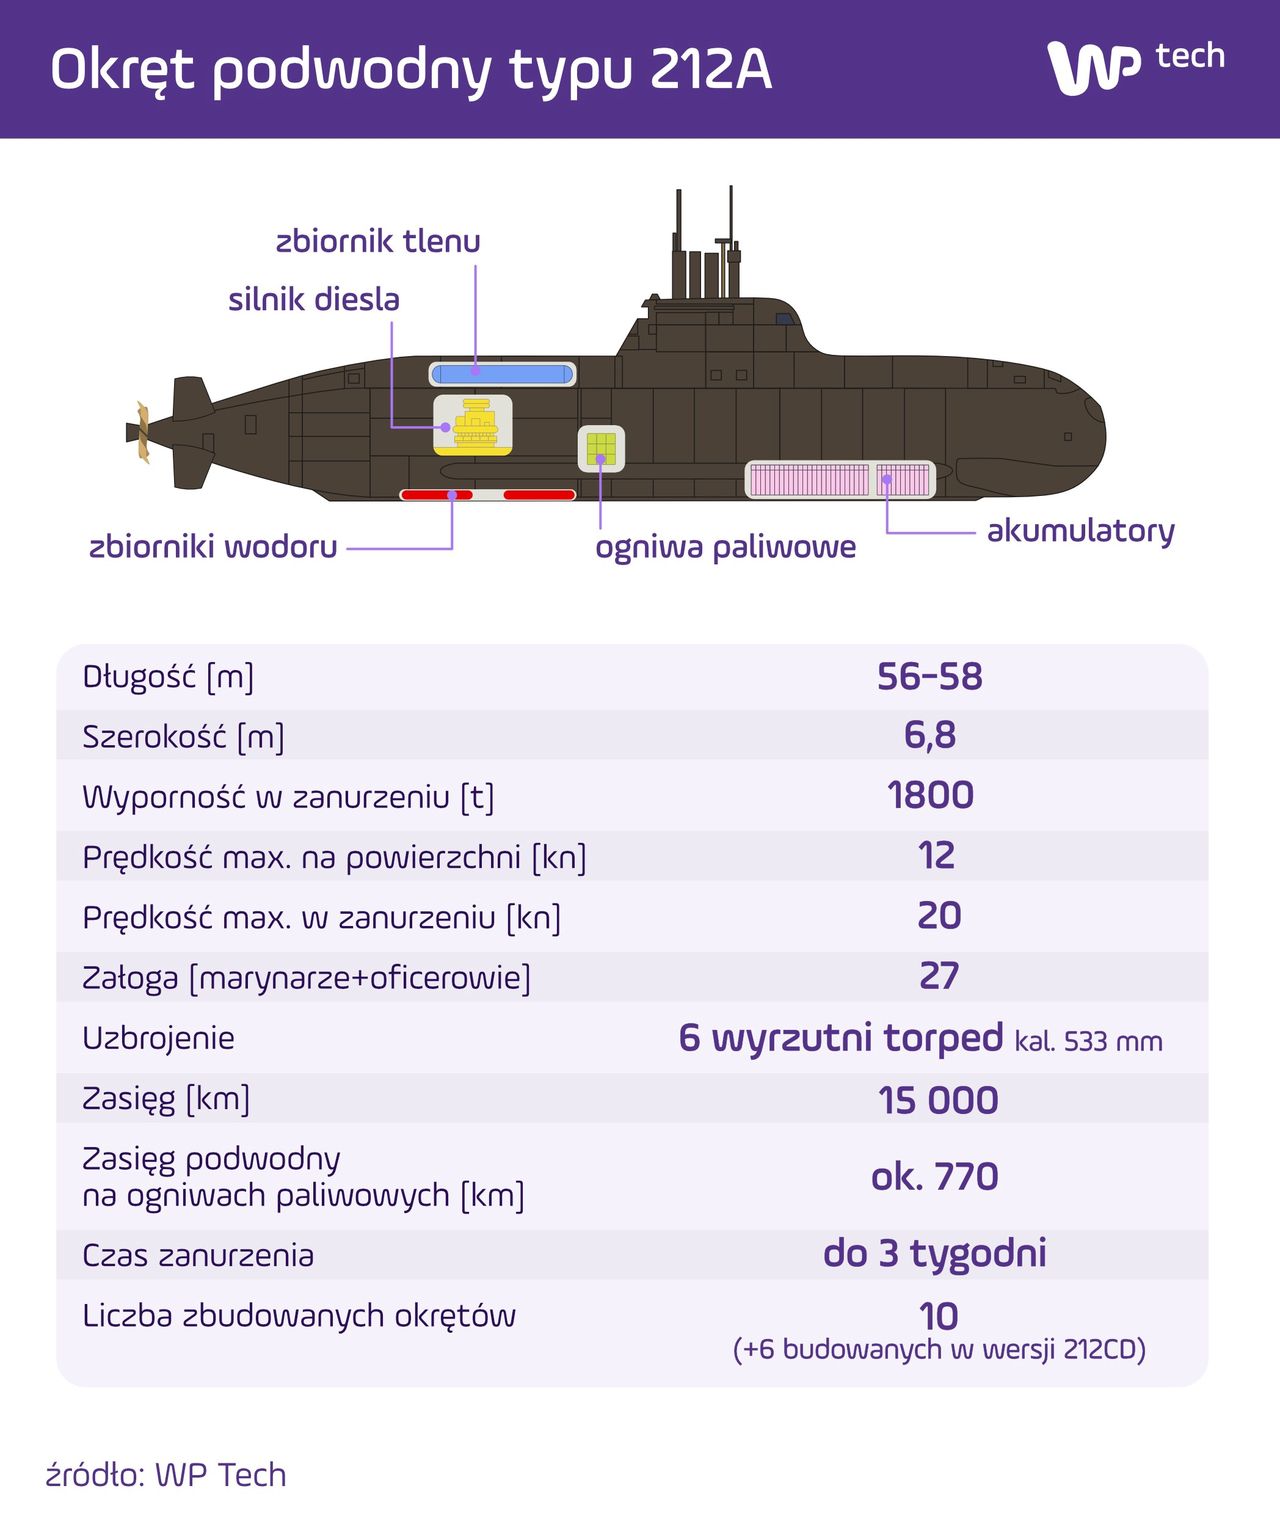 Okręt podwodny typu 212A (kliknij w grafikę, aby powiększyć)